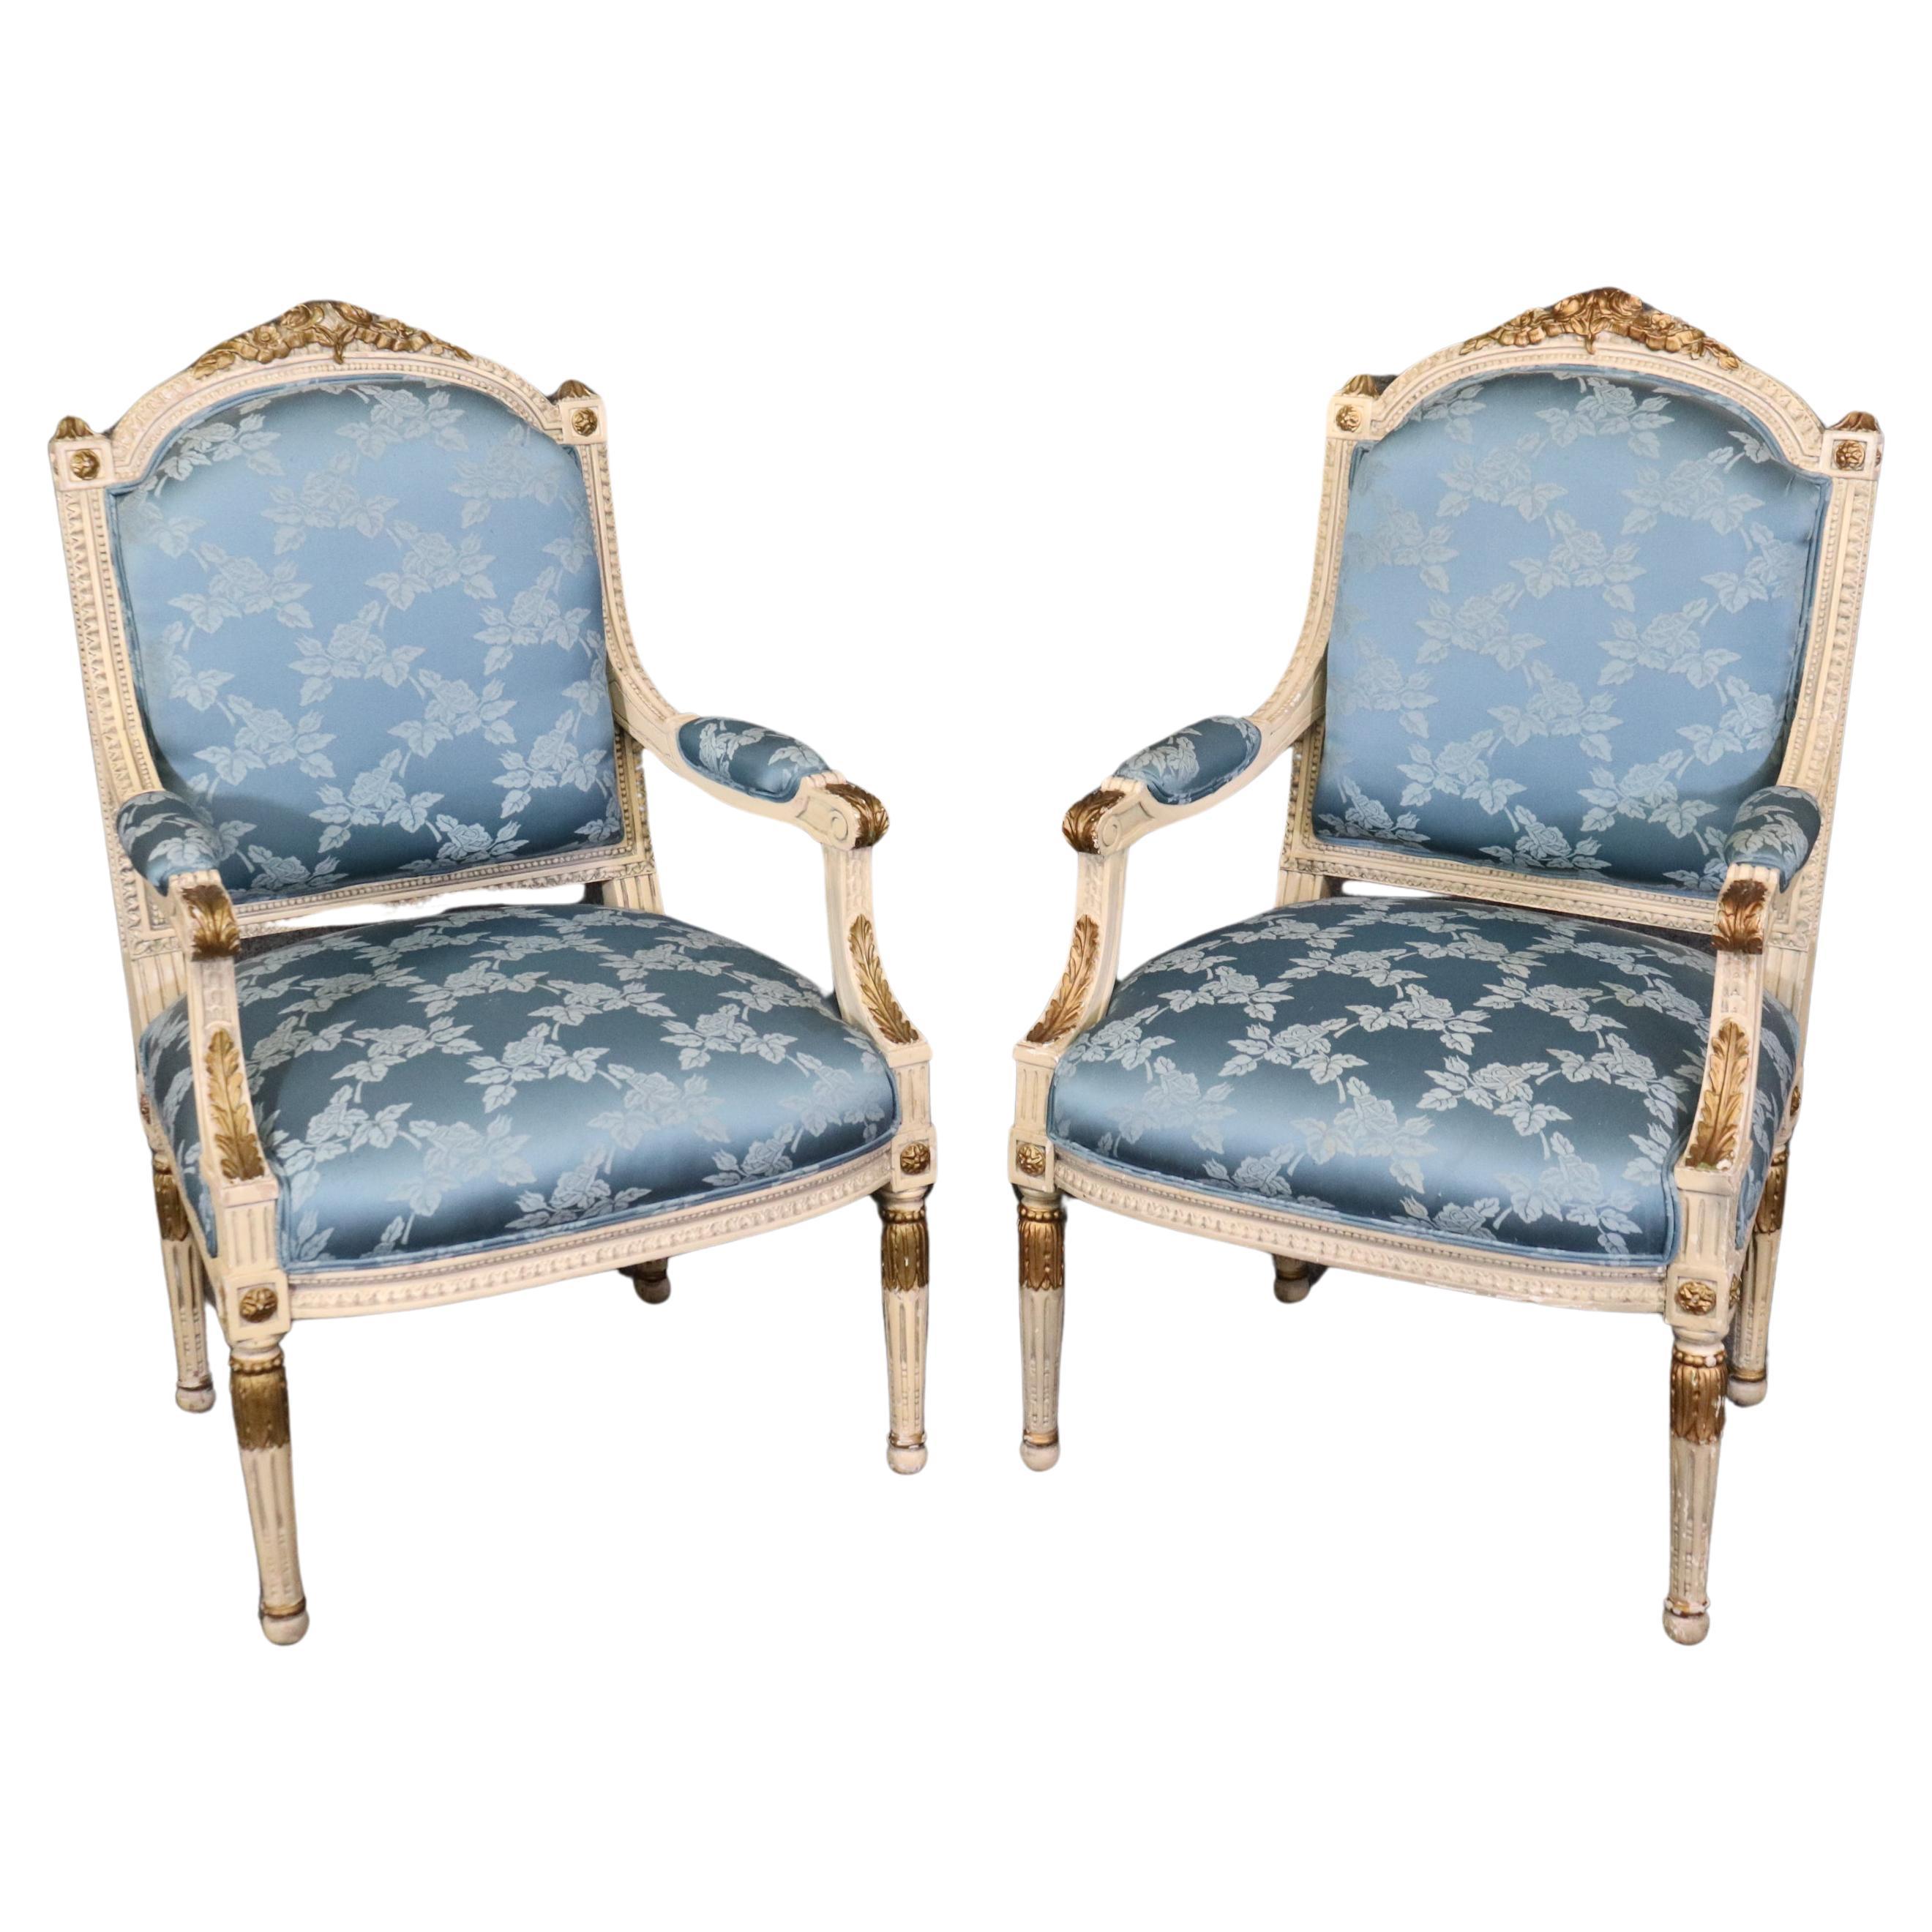 Magnifique paire de fauteuils français sculptés, peints et dorés en soie bleue 